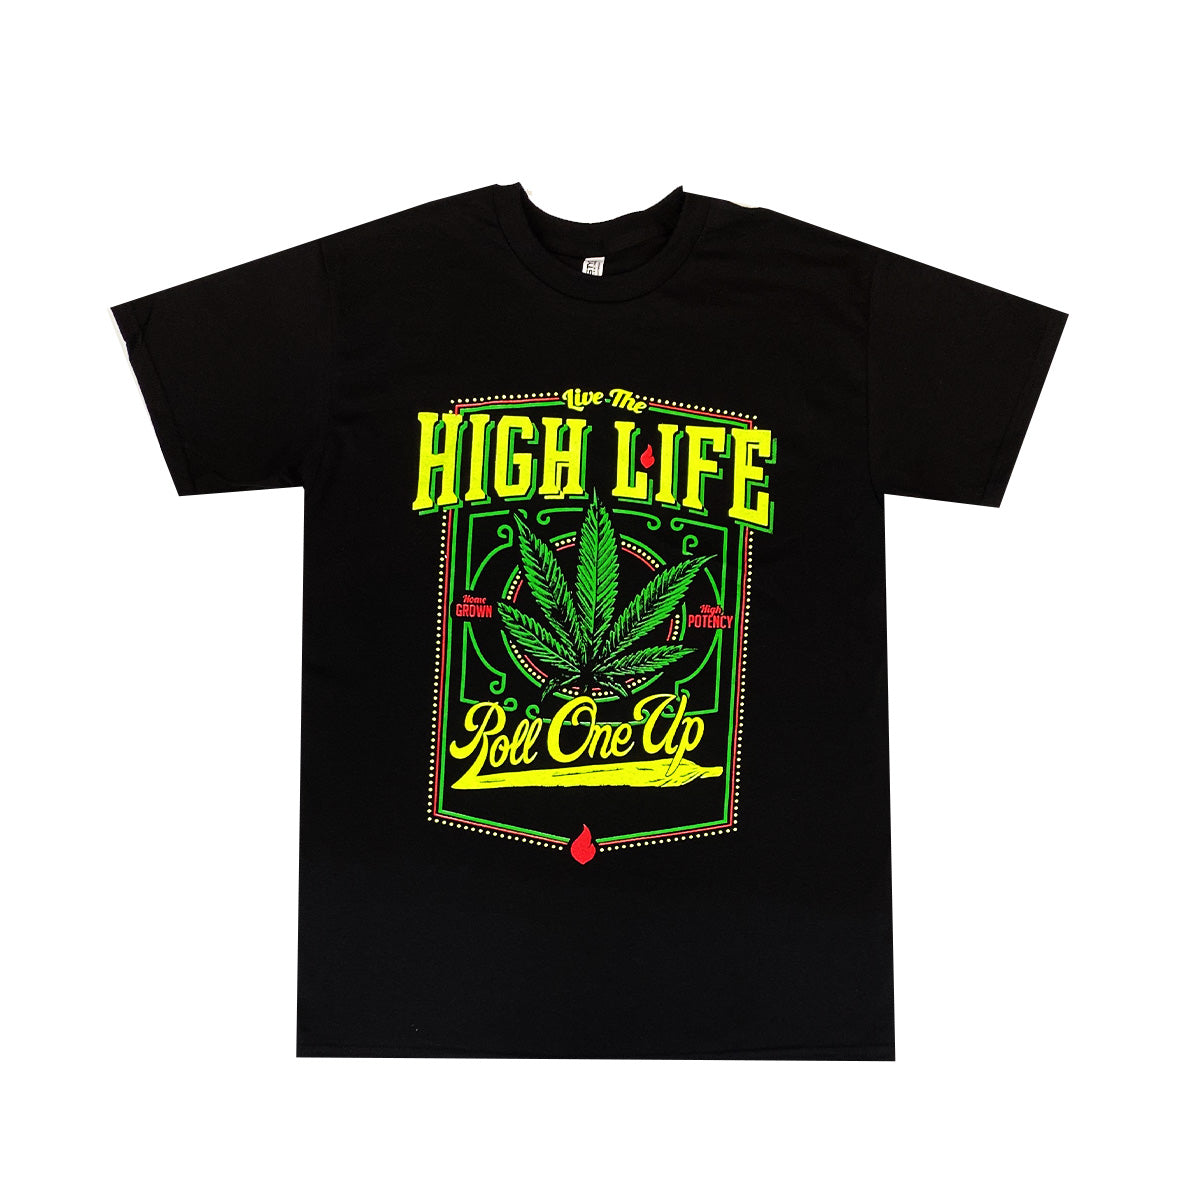 Live The High Life 100% Cotton T-Shirt, Pack of 5 Units, M, L, XL, XXL, XXXL